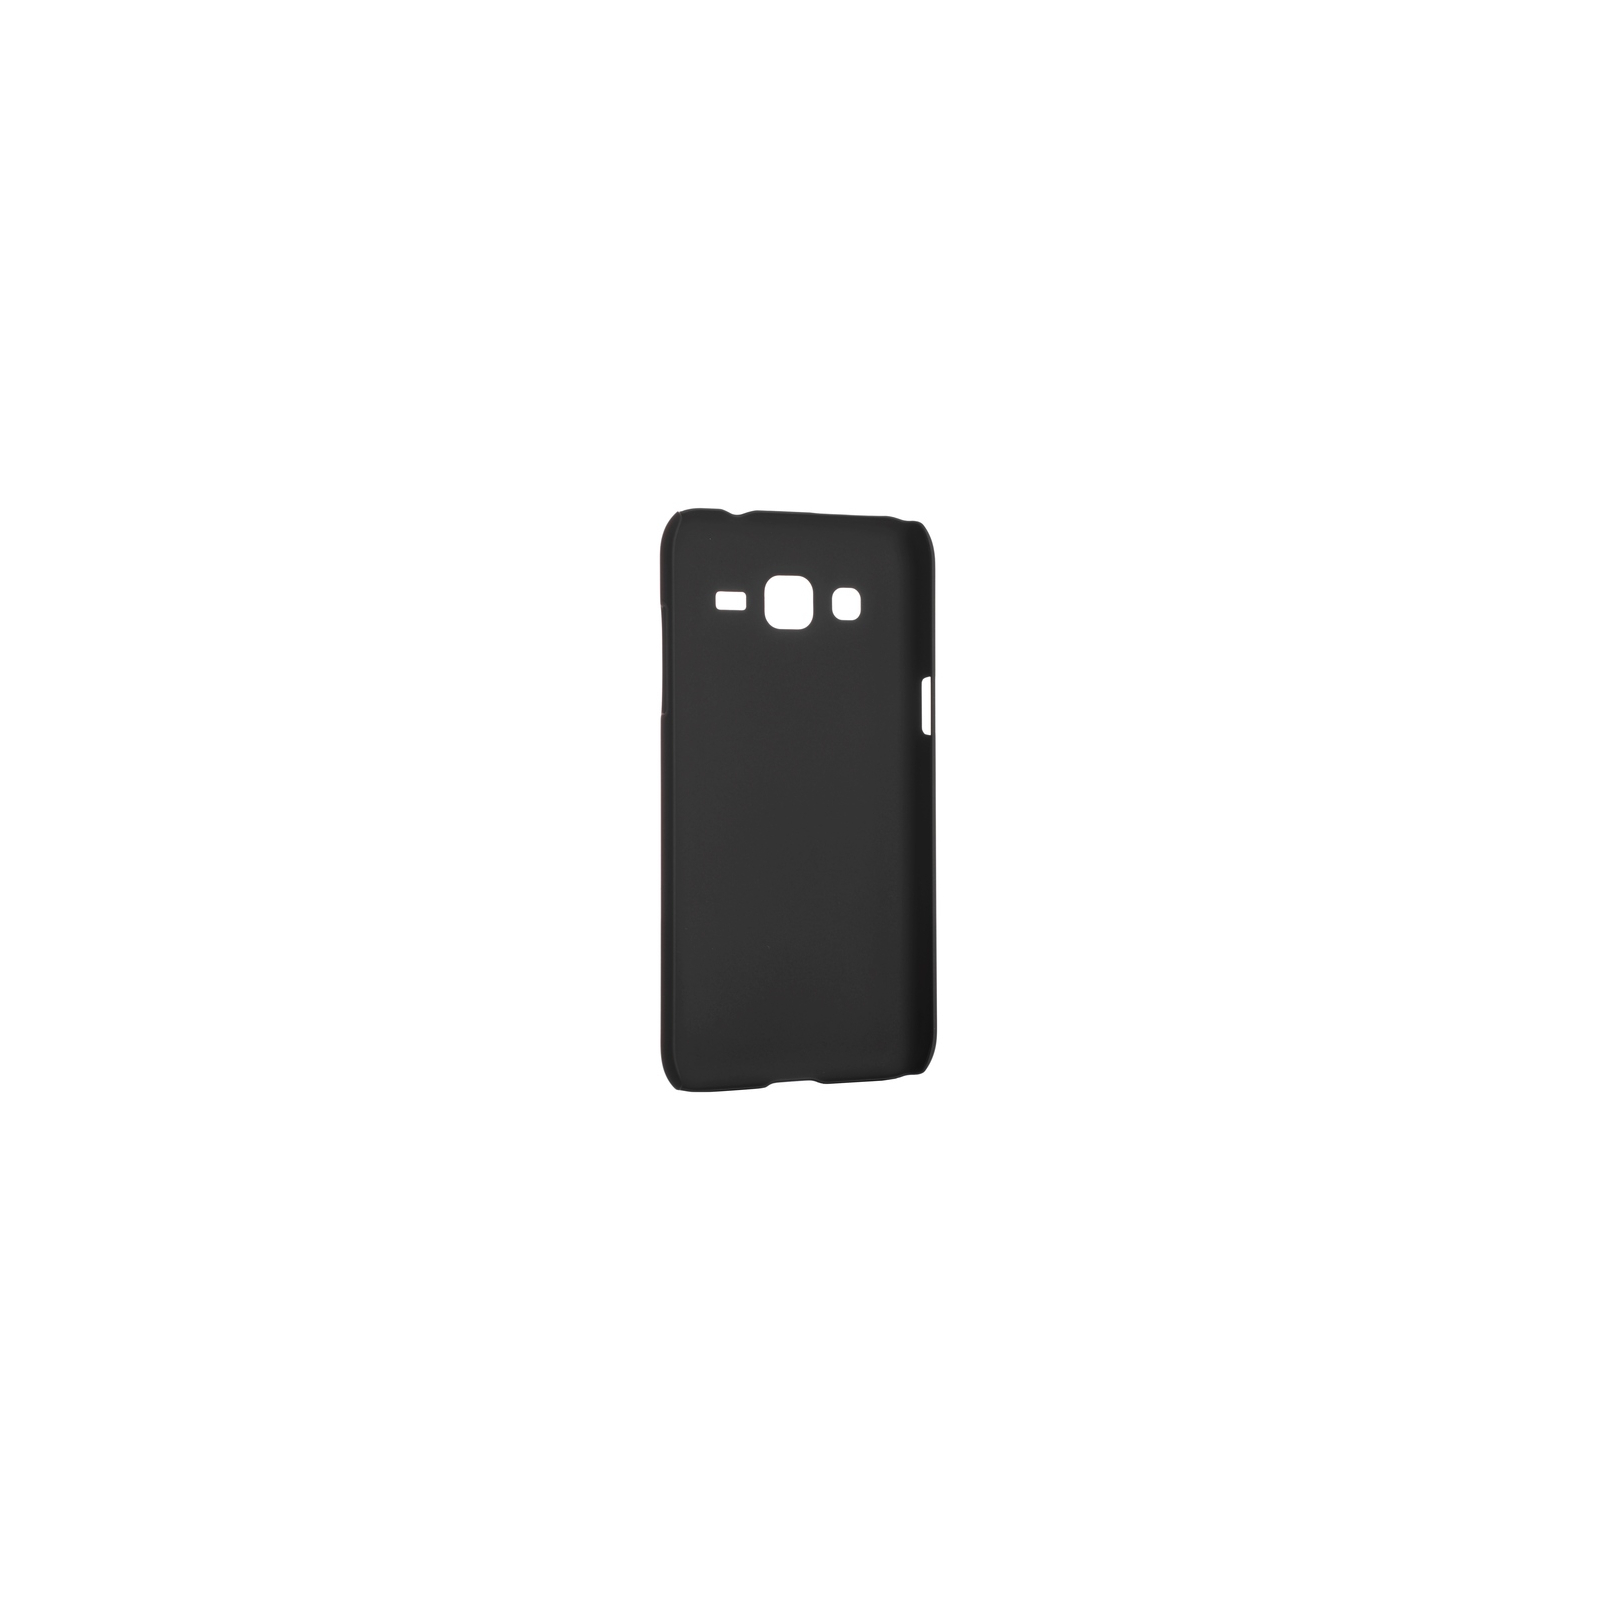 Чехол для мобильного телефона Nillkin для Samsung J2/J200 - Super Frosted Shield (Black) (6249617) изображение 2